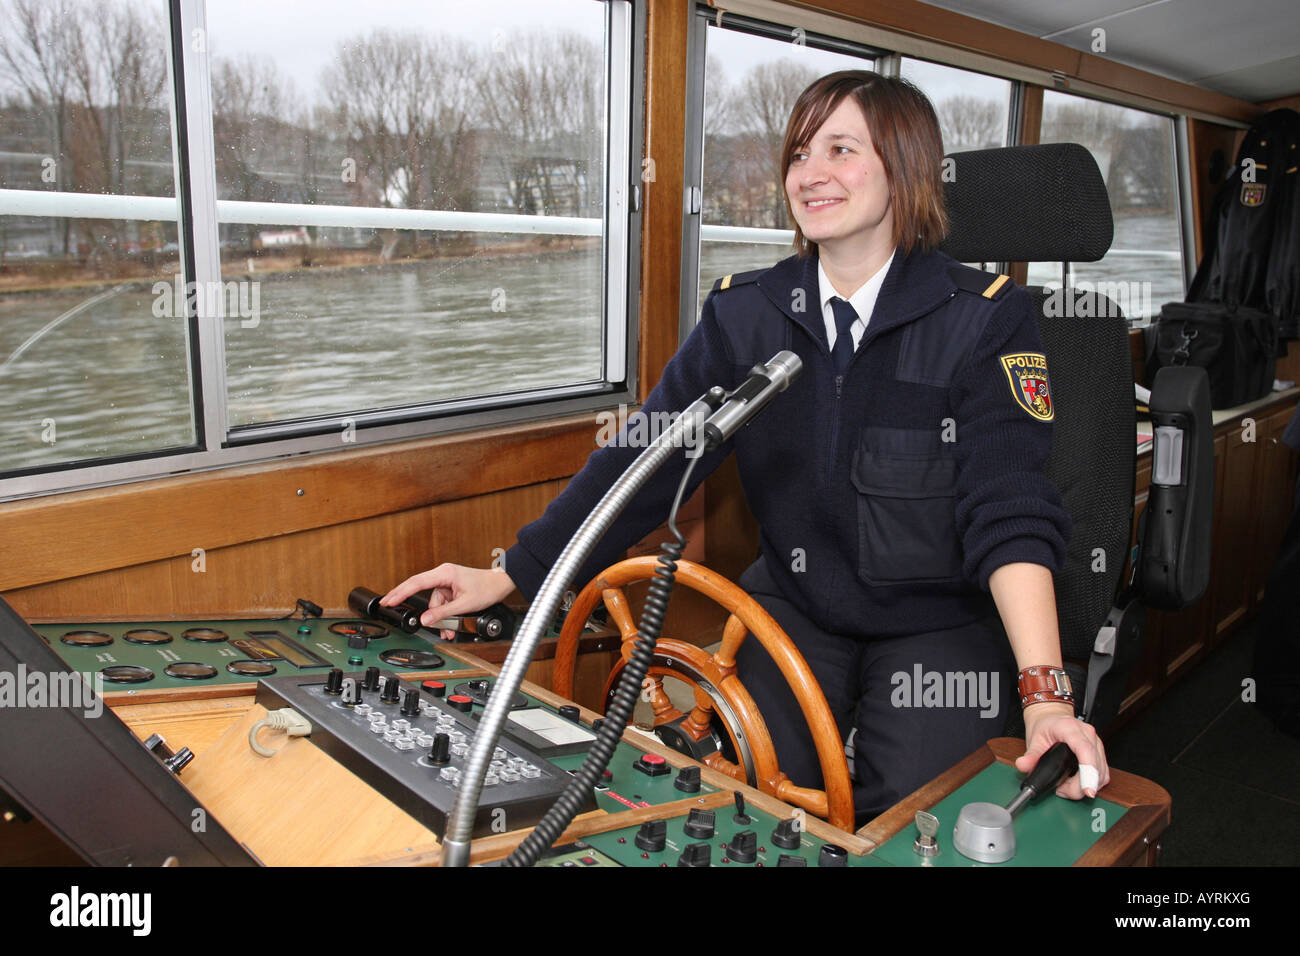 Commissaire de police Katrin Pletsch au volant de la WSP 11 bateau de police sur le Rhin près de Coblence, Rhénanie-Palatinat Banque D'Images